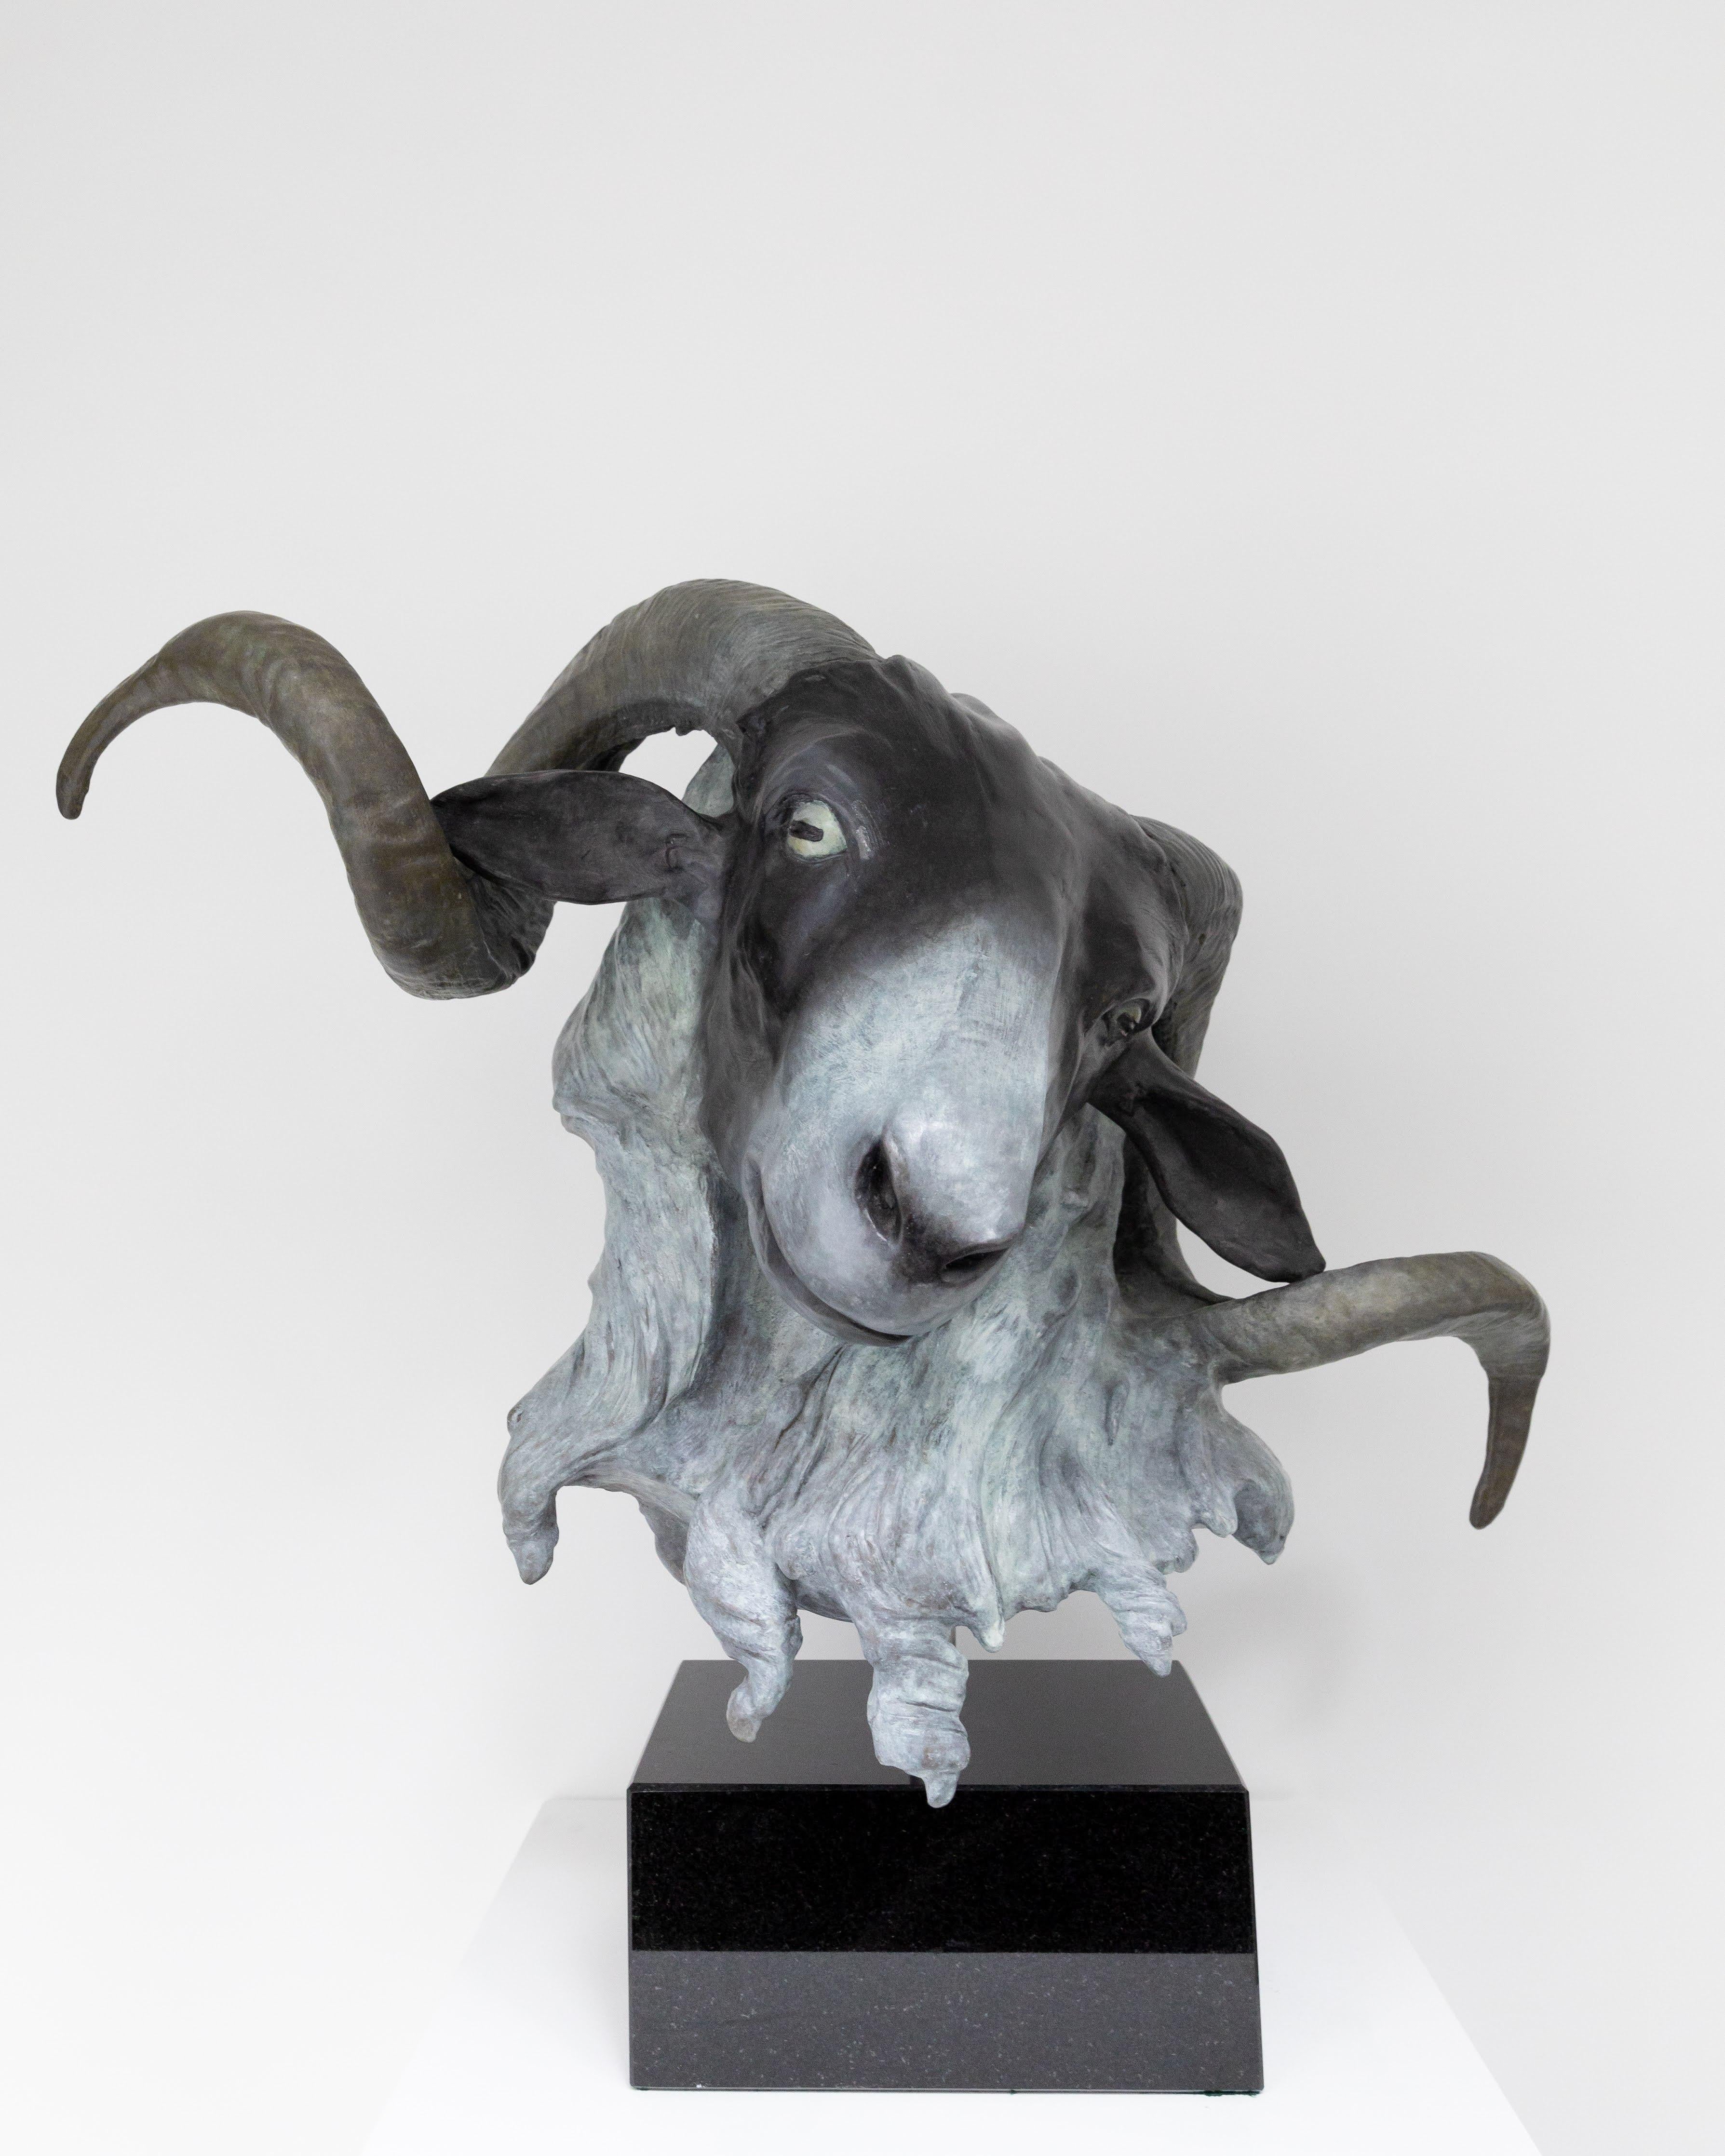 Figurative Sculpture Barry Davies - Rams écossais à facettes noires (Ovis Aries)